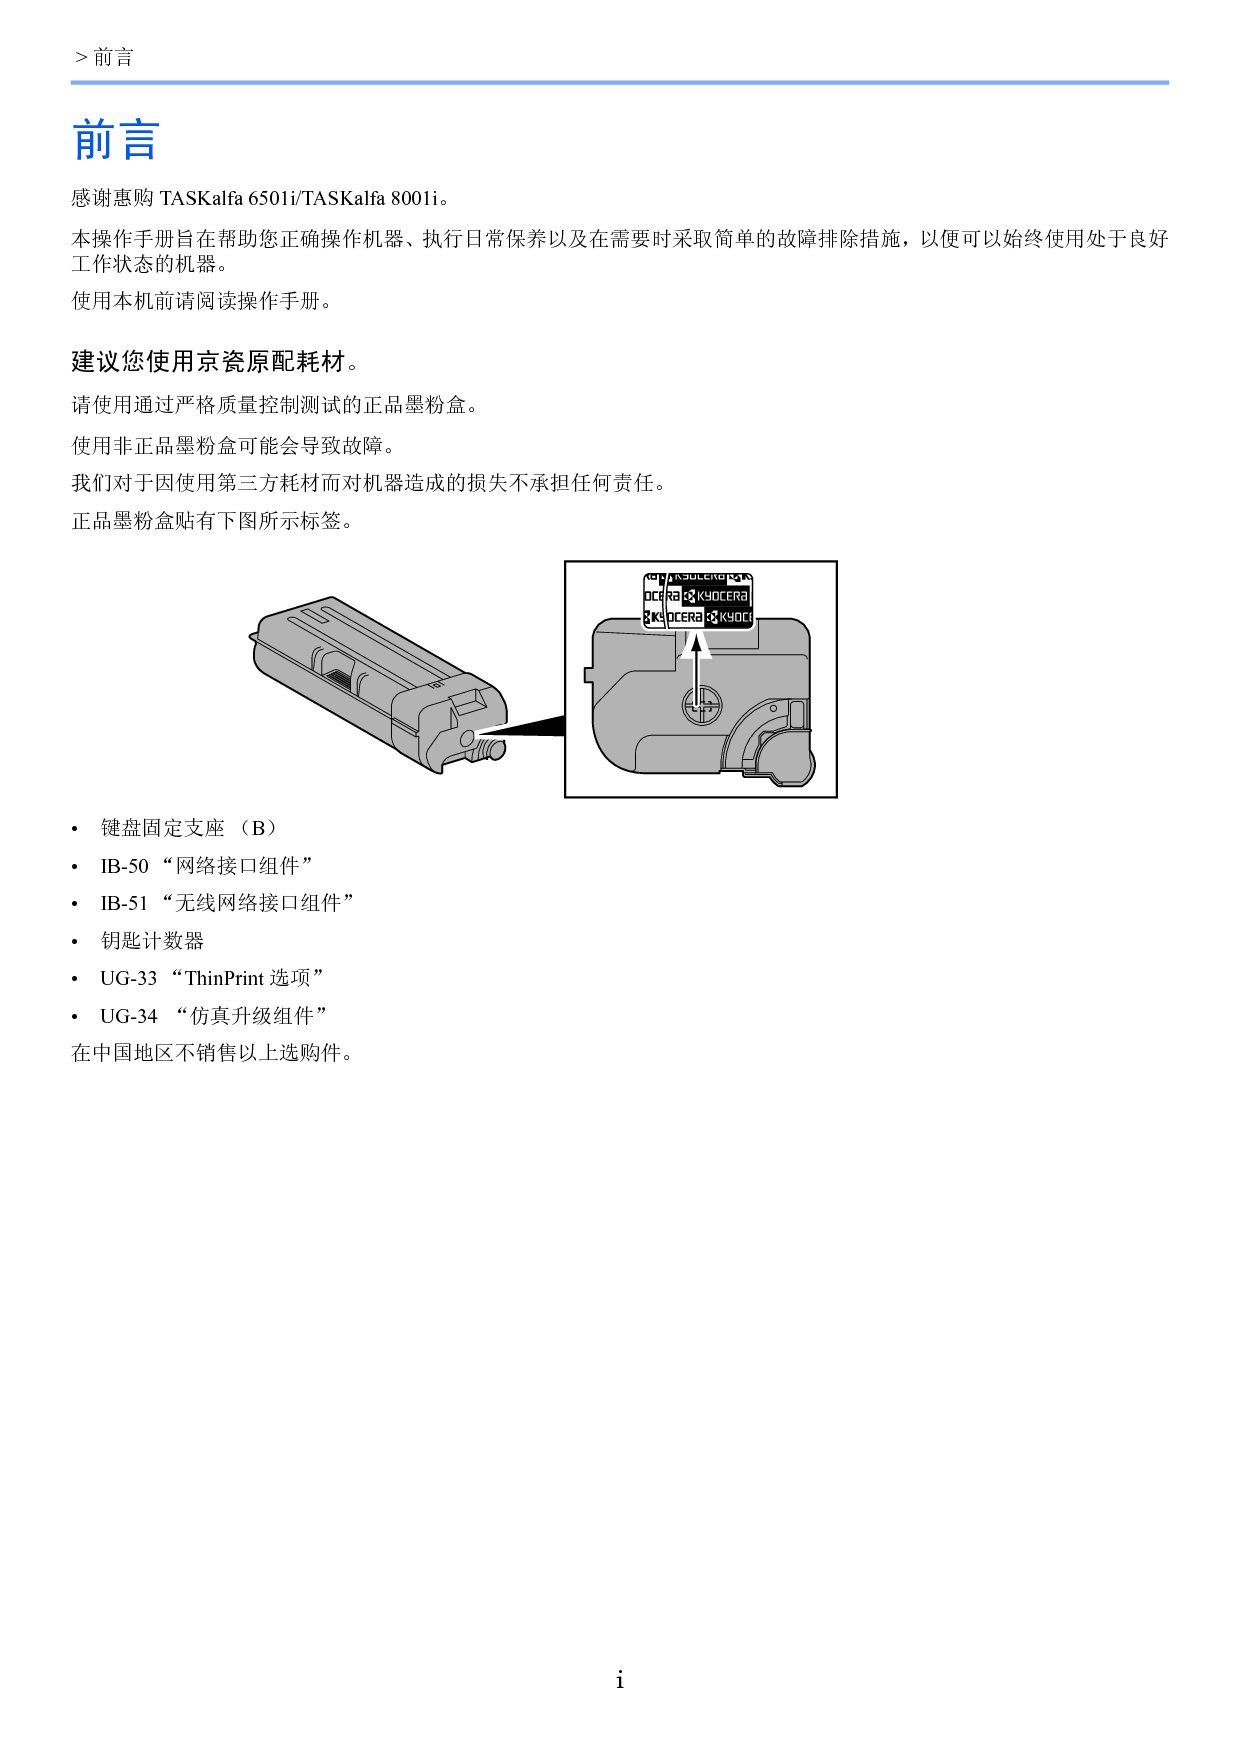 京瓷 Kyocera TASKalfa 6501i 操作手册 第1页